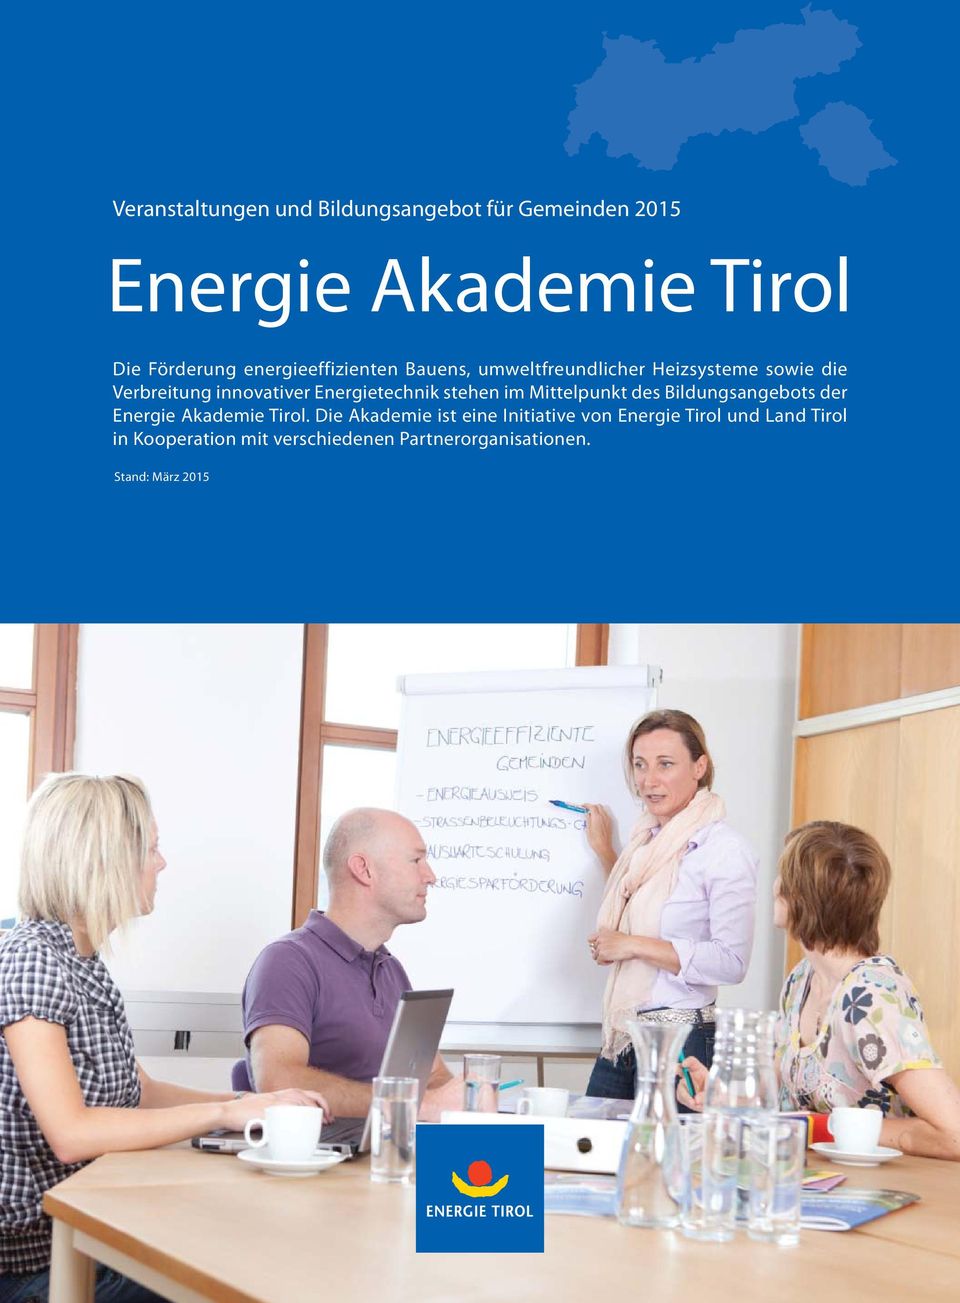 Energietechnik stehen im Mittelpunkt des Bildungsangebots der Energie Akademie Tirol.